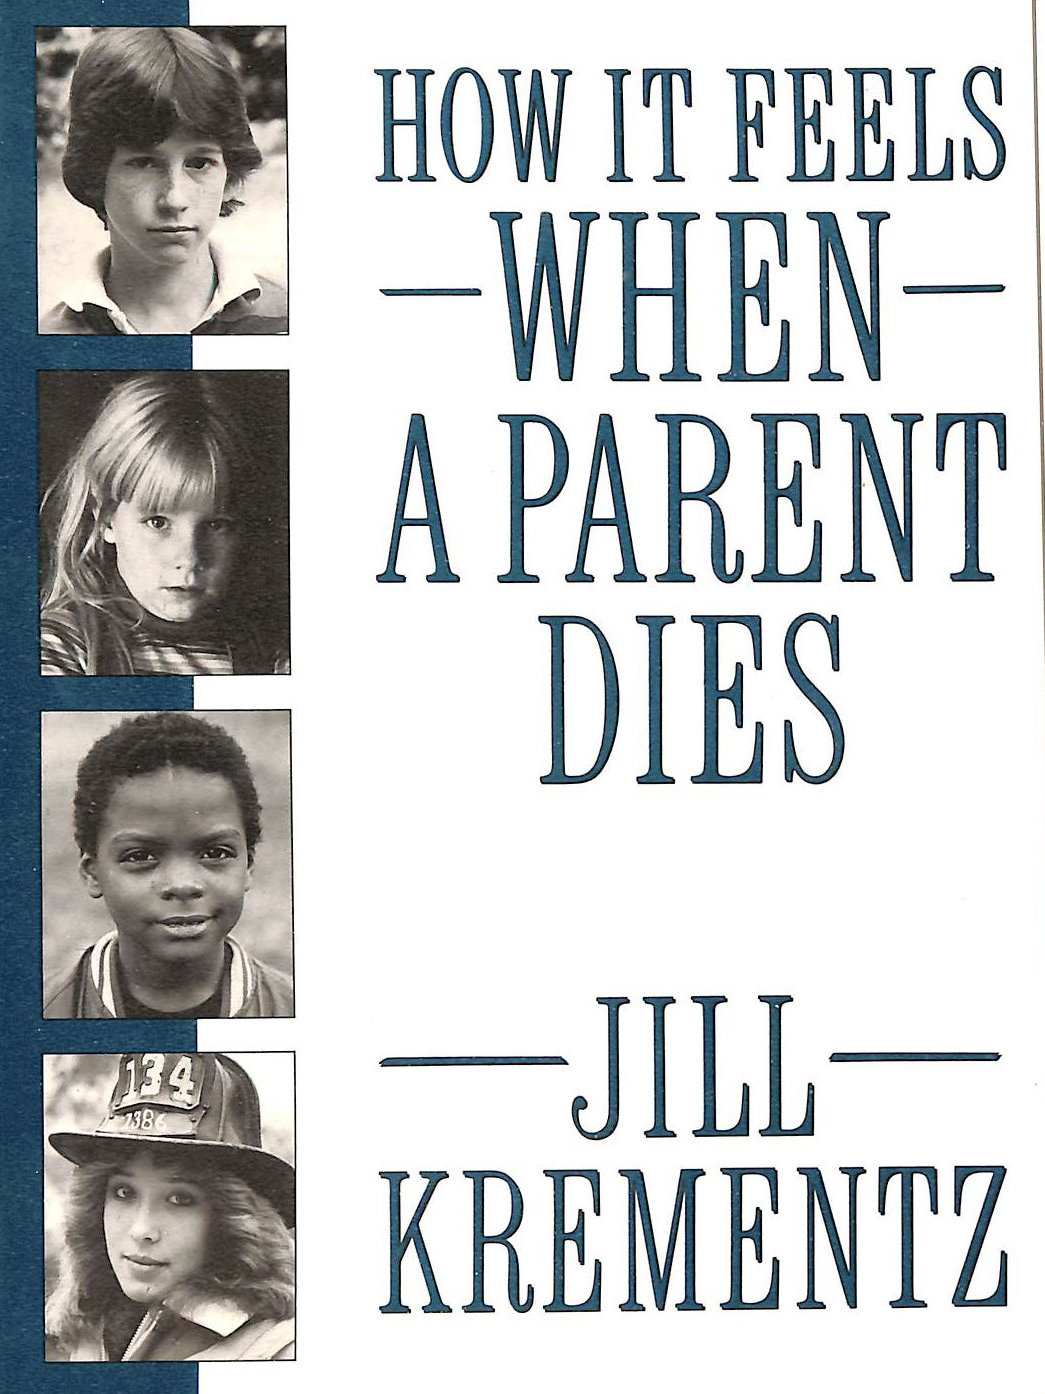 KREMENTZ - How It Feels When a Parent Dies